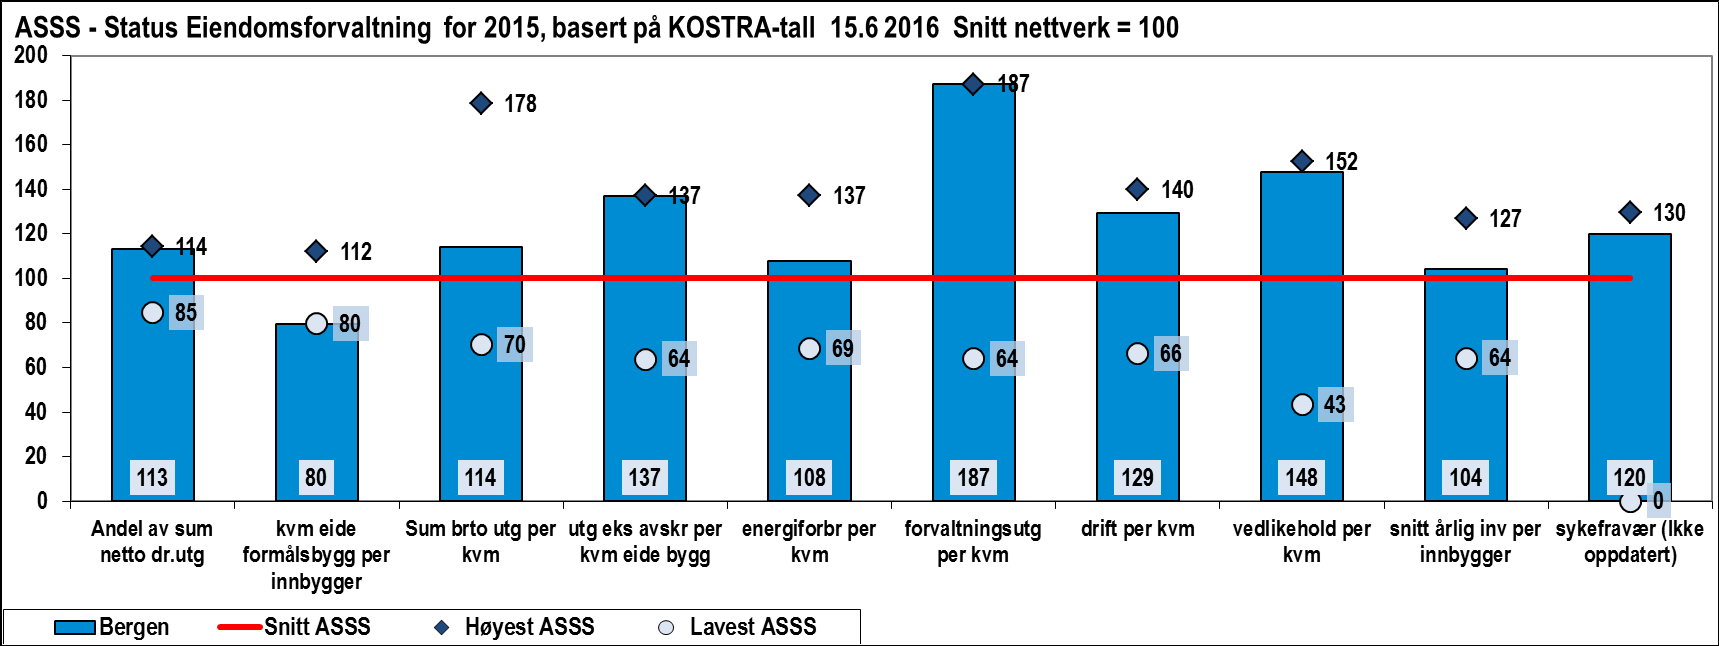 Indikator BERGEN Snitt ASSS Korrigerte brutto driftsutgifter til kommunal eiendomsforvaltning per m2 i kroner (NOK) Lavest ASSS Høyest ASSS 1477 1293,3 909,0 2306,0 Sum brutto driftsutgifter eks